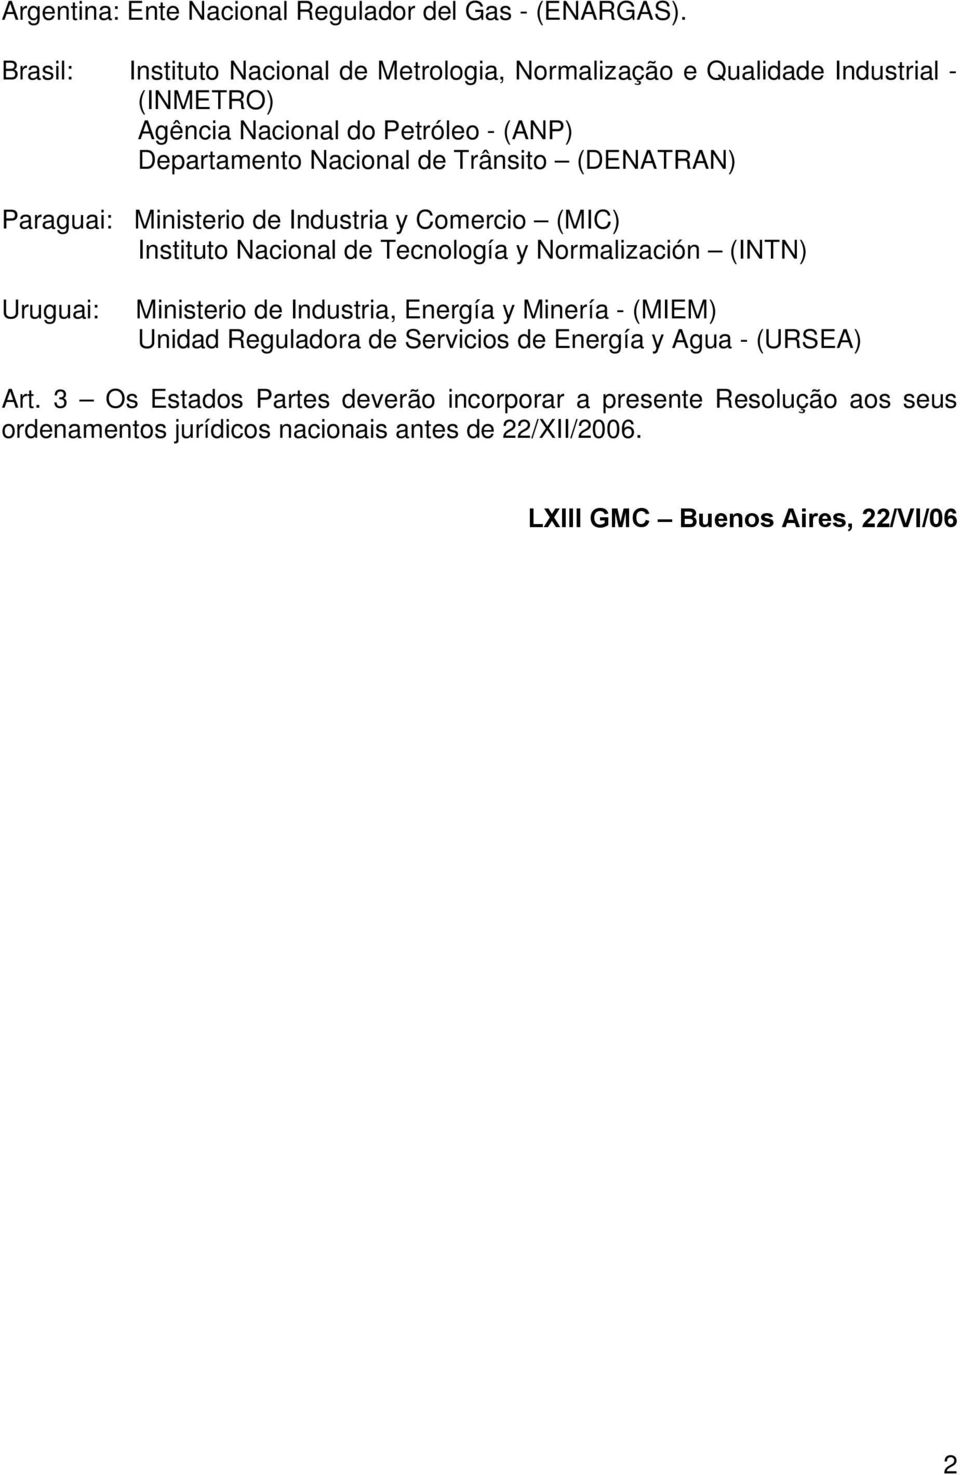 Trânsito (DENATRAN) Paraguai: Ministerio de Industria y Comercio (MIC) Instituto Nacional de Tecnología y Normalización (INTN) Uruguai: Ministerio de